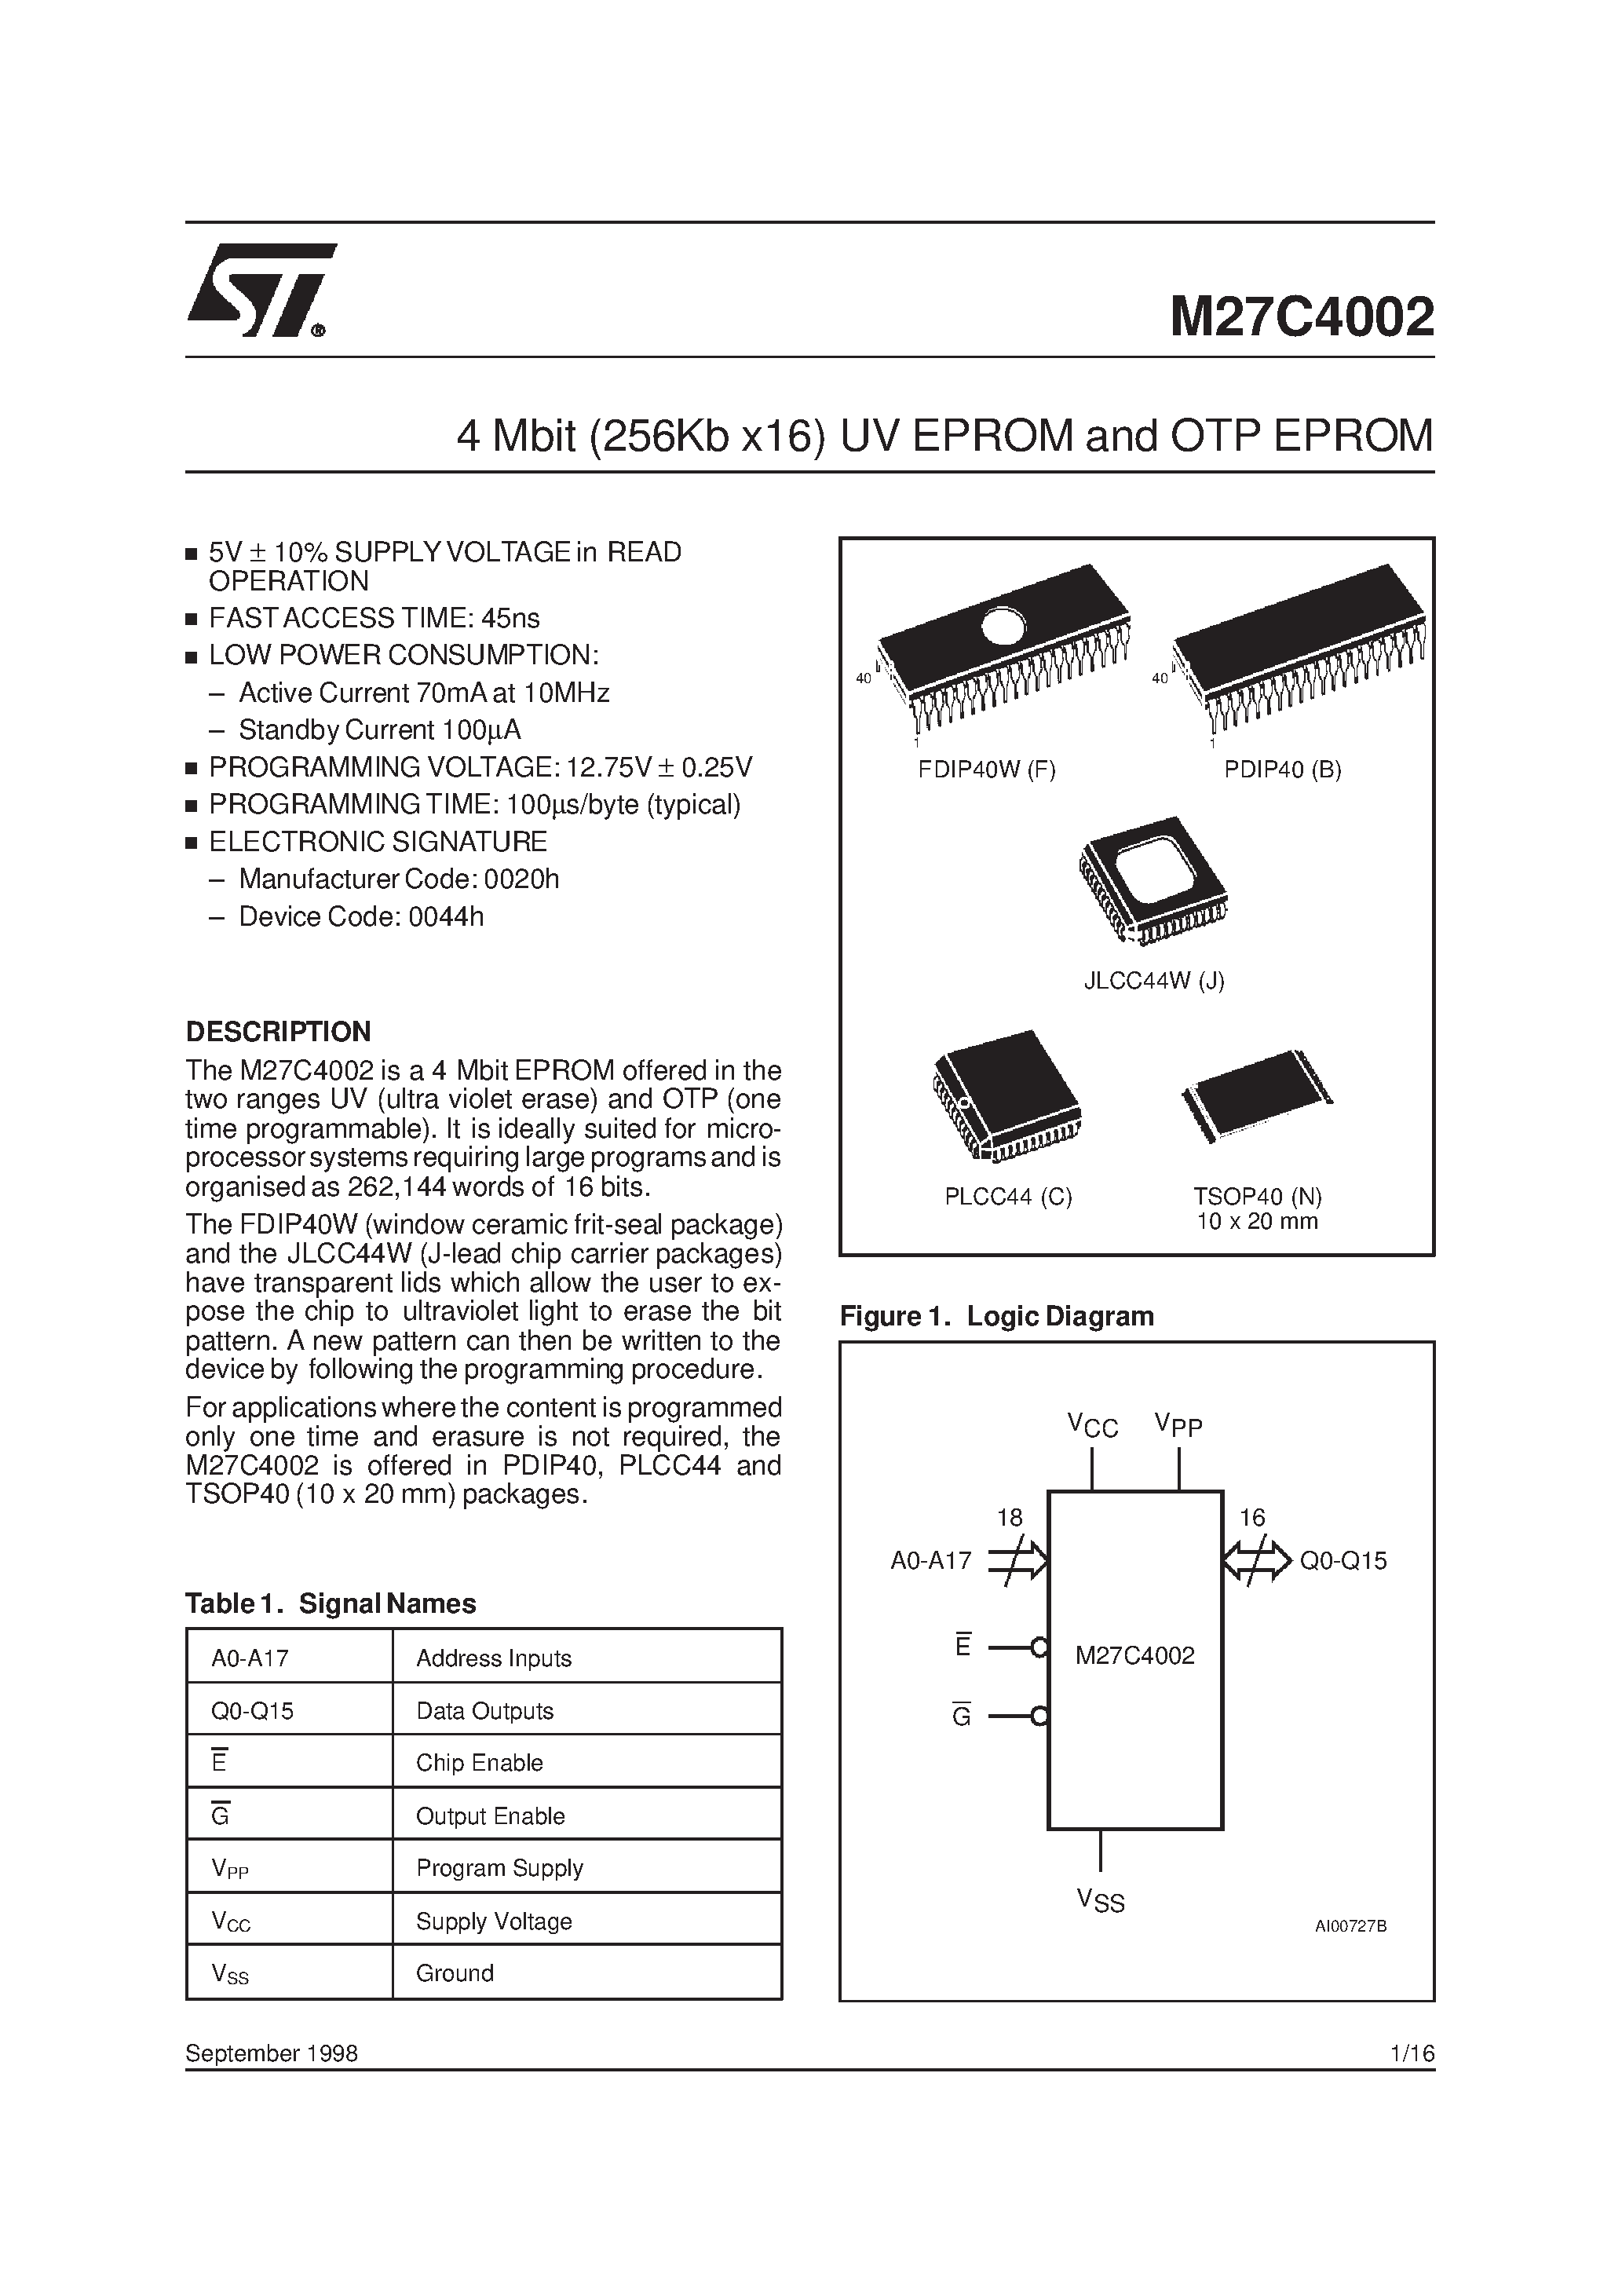 Datasheet M27C4002-10J6X - 4 Mbit 256Kb x16 UV EPROM and OTP EPROM page 1